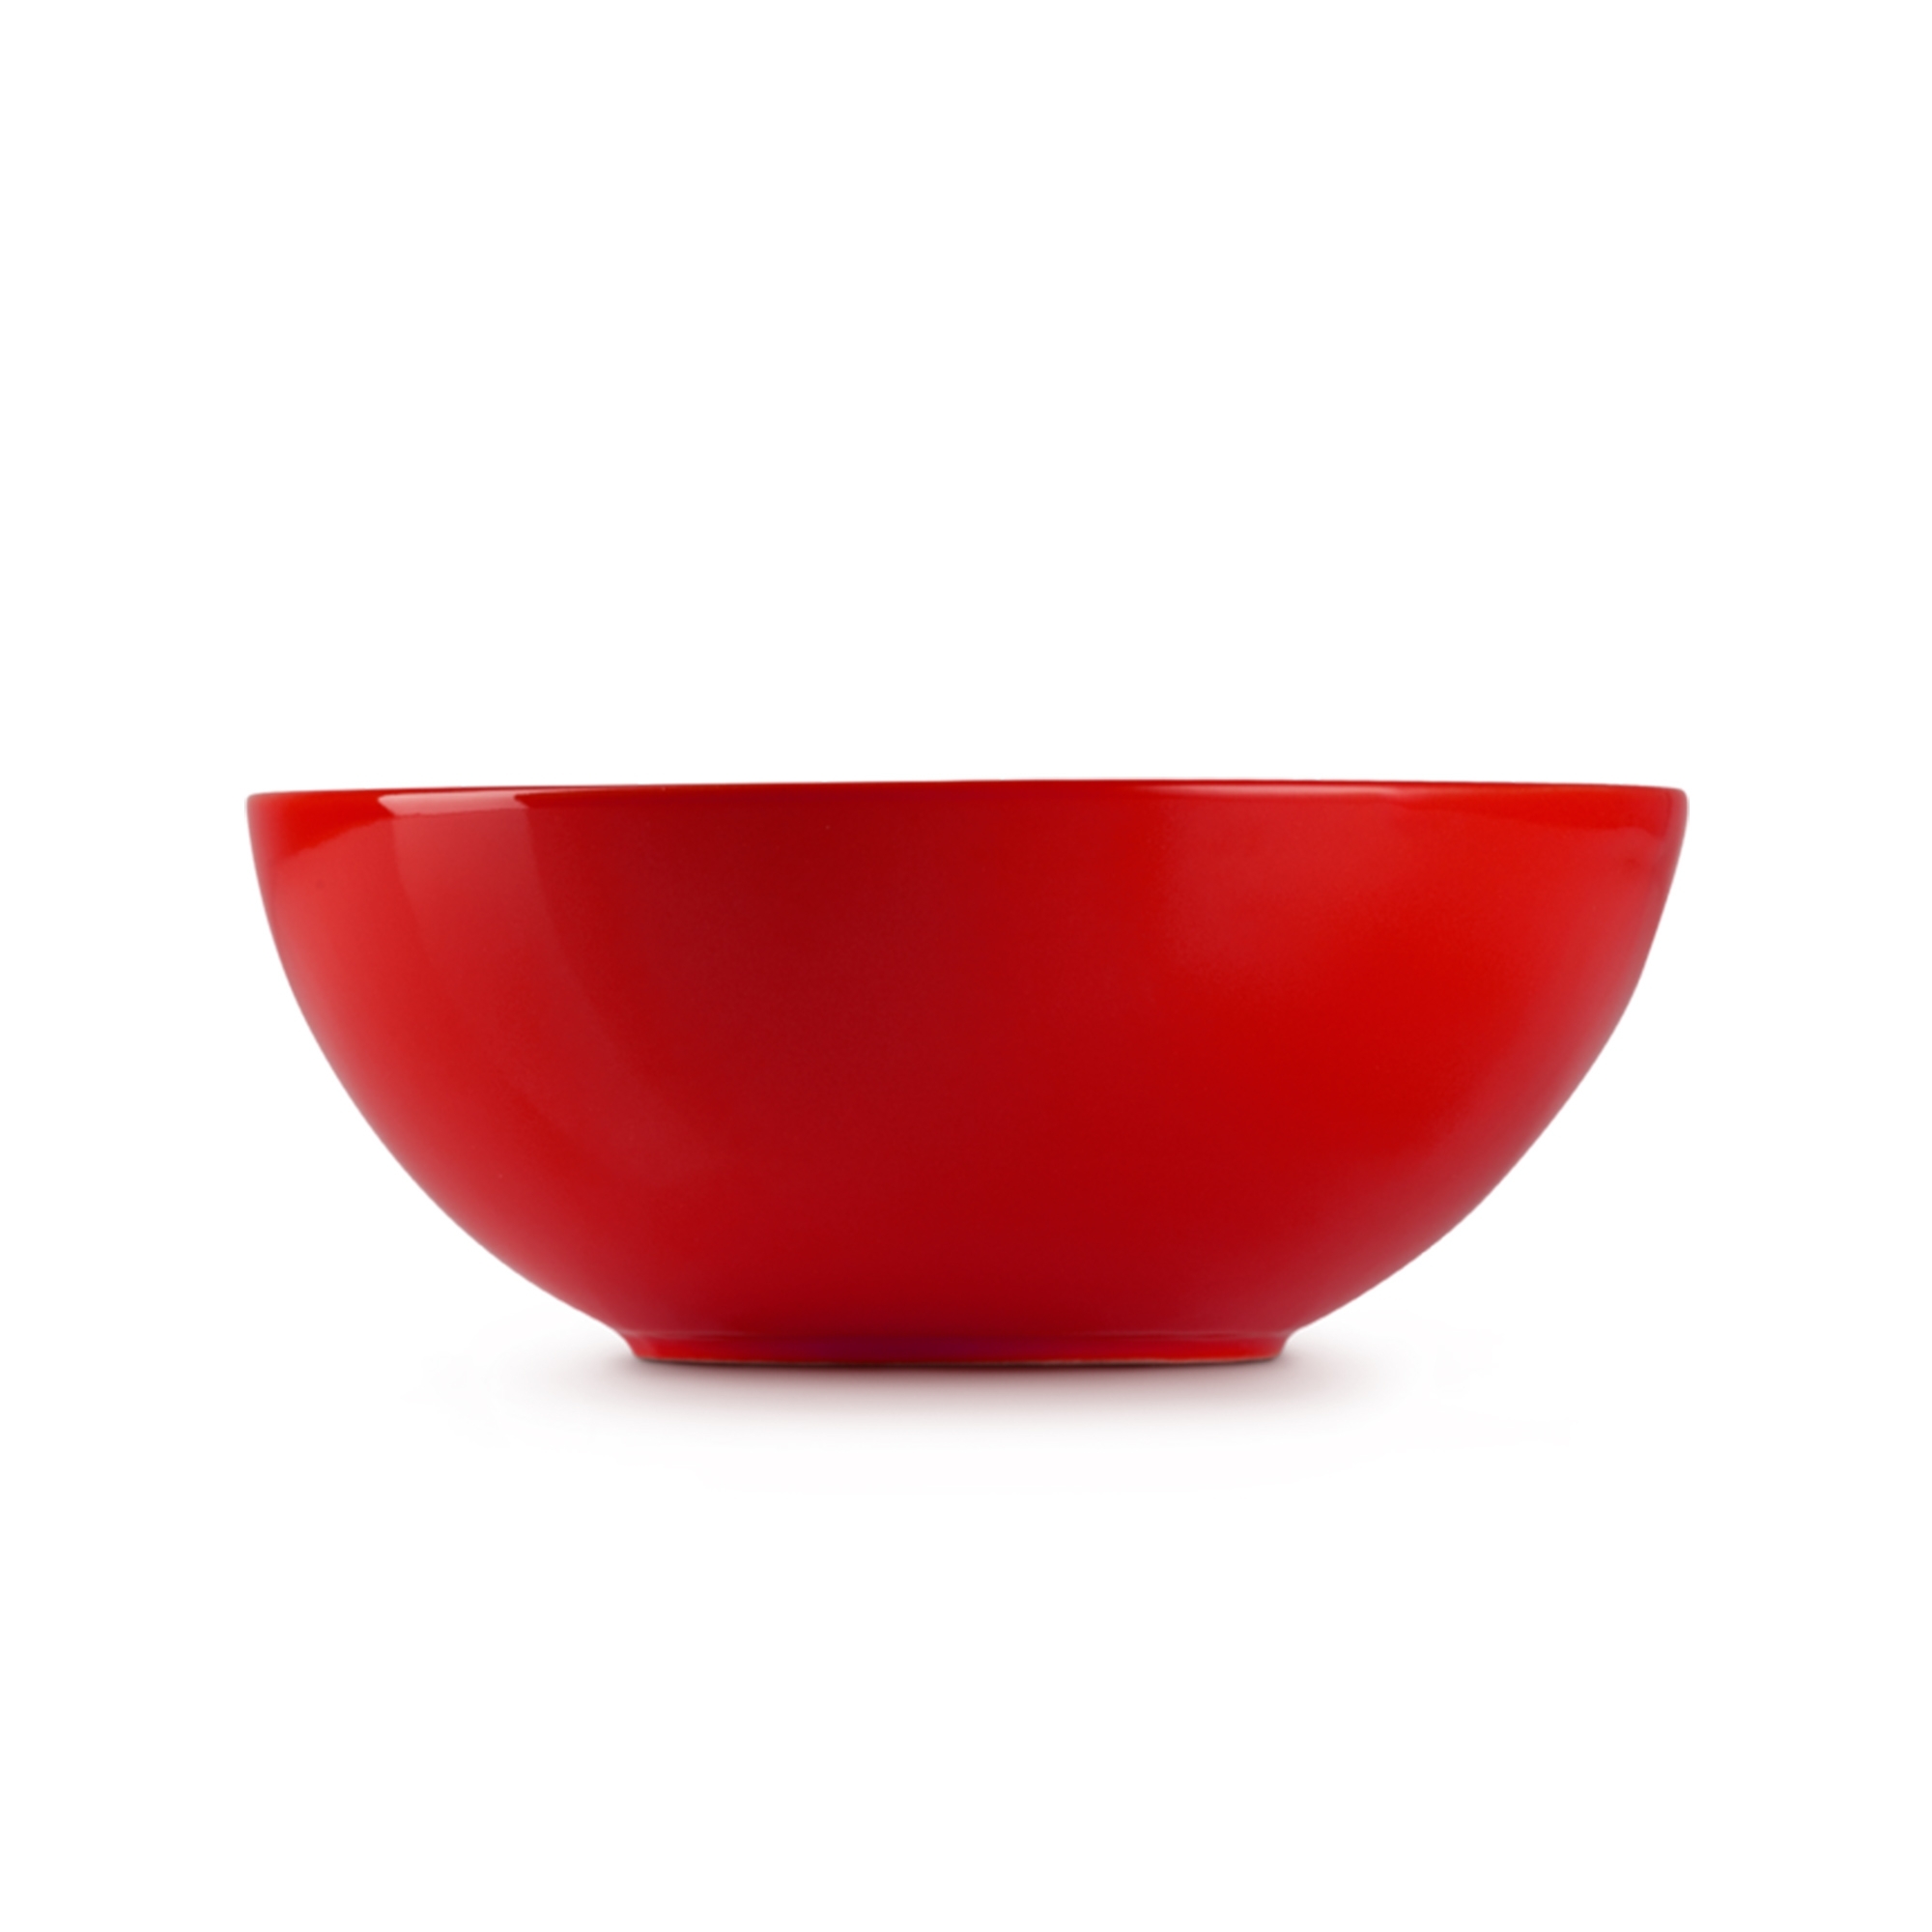 Le Creuset - Cereal Bowl 16 cm - Cerise